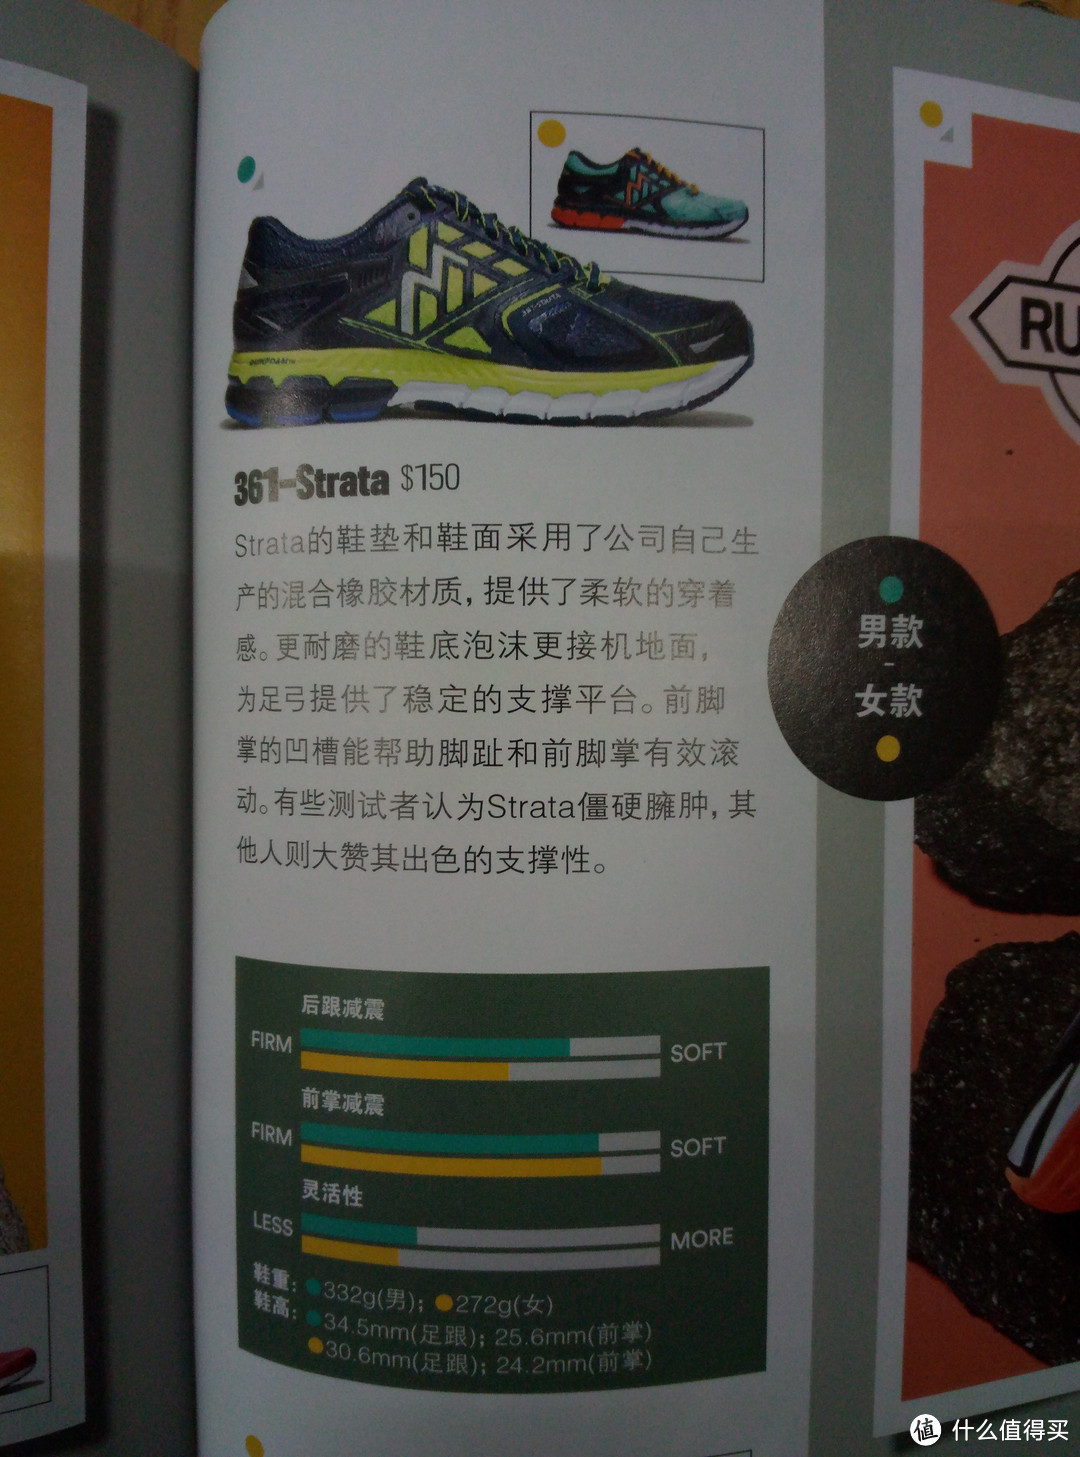 中文版《跑者世界》杂志评论（含2016年夏季跑鞋指南评论）